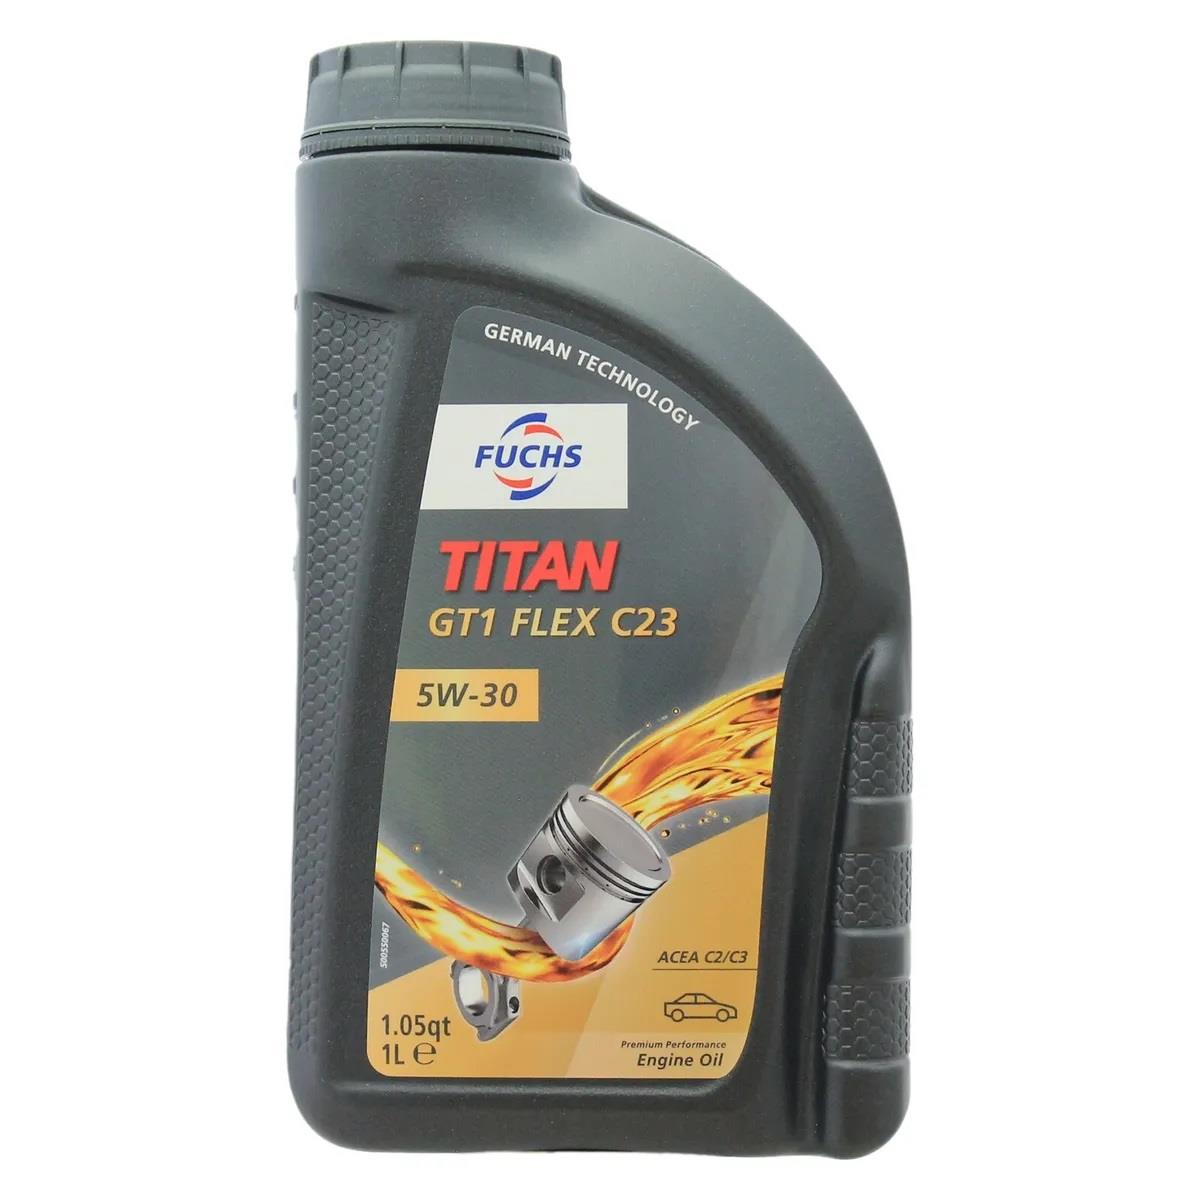 TITAN GT1 FLEX C23 5W30